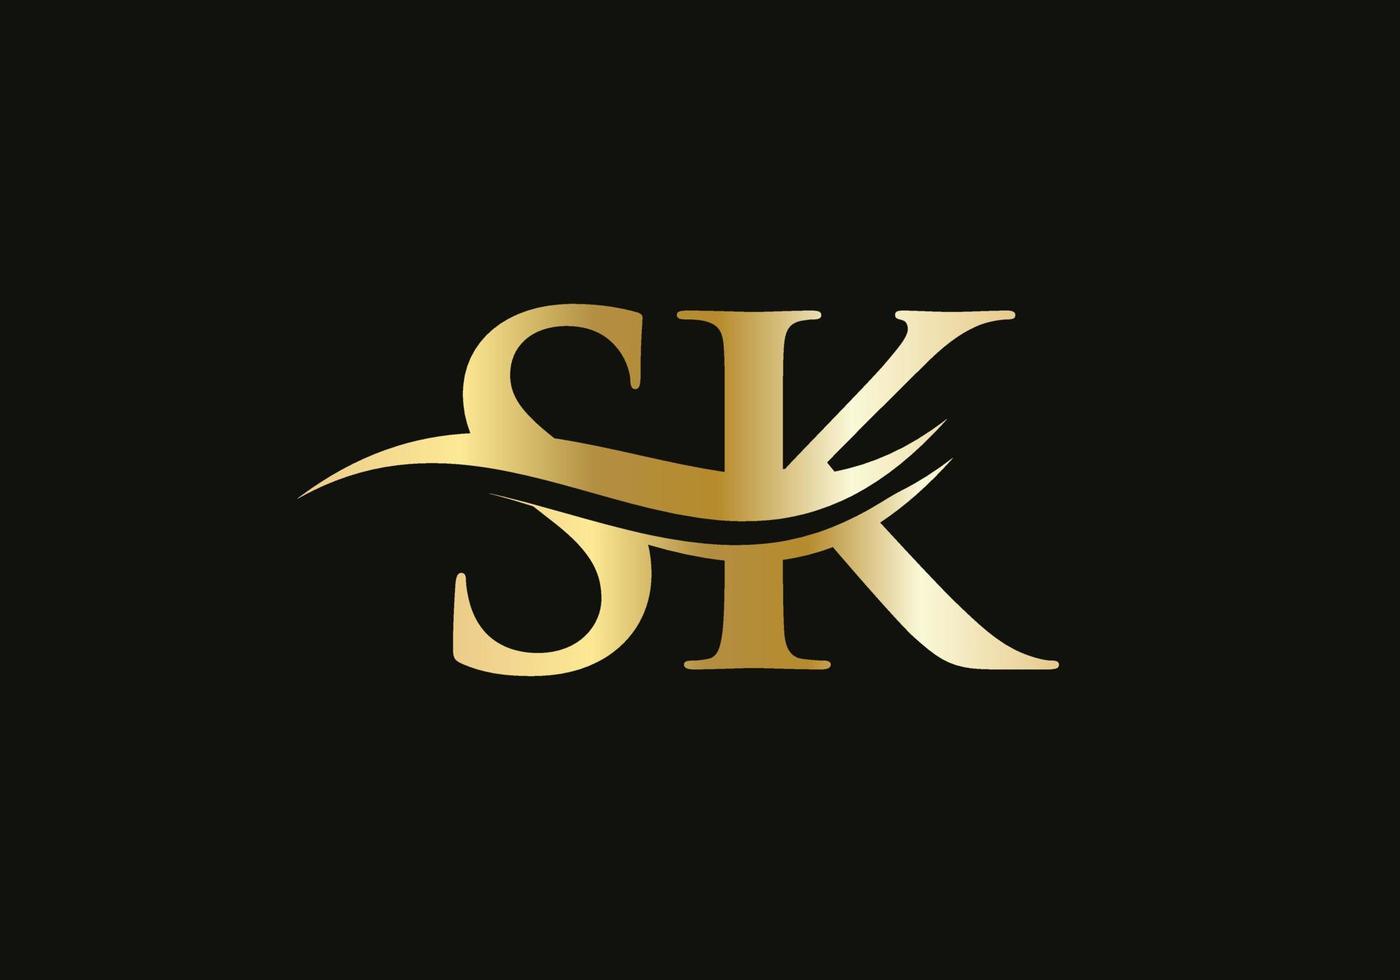 modernes sk-logo-design für geschäfts- und firmenidentität. kreativer sk-brief mit luxuskonzept vektor